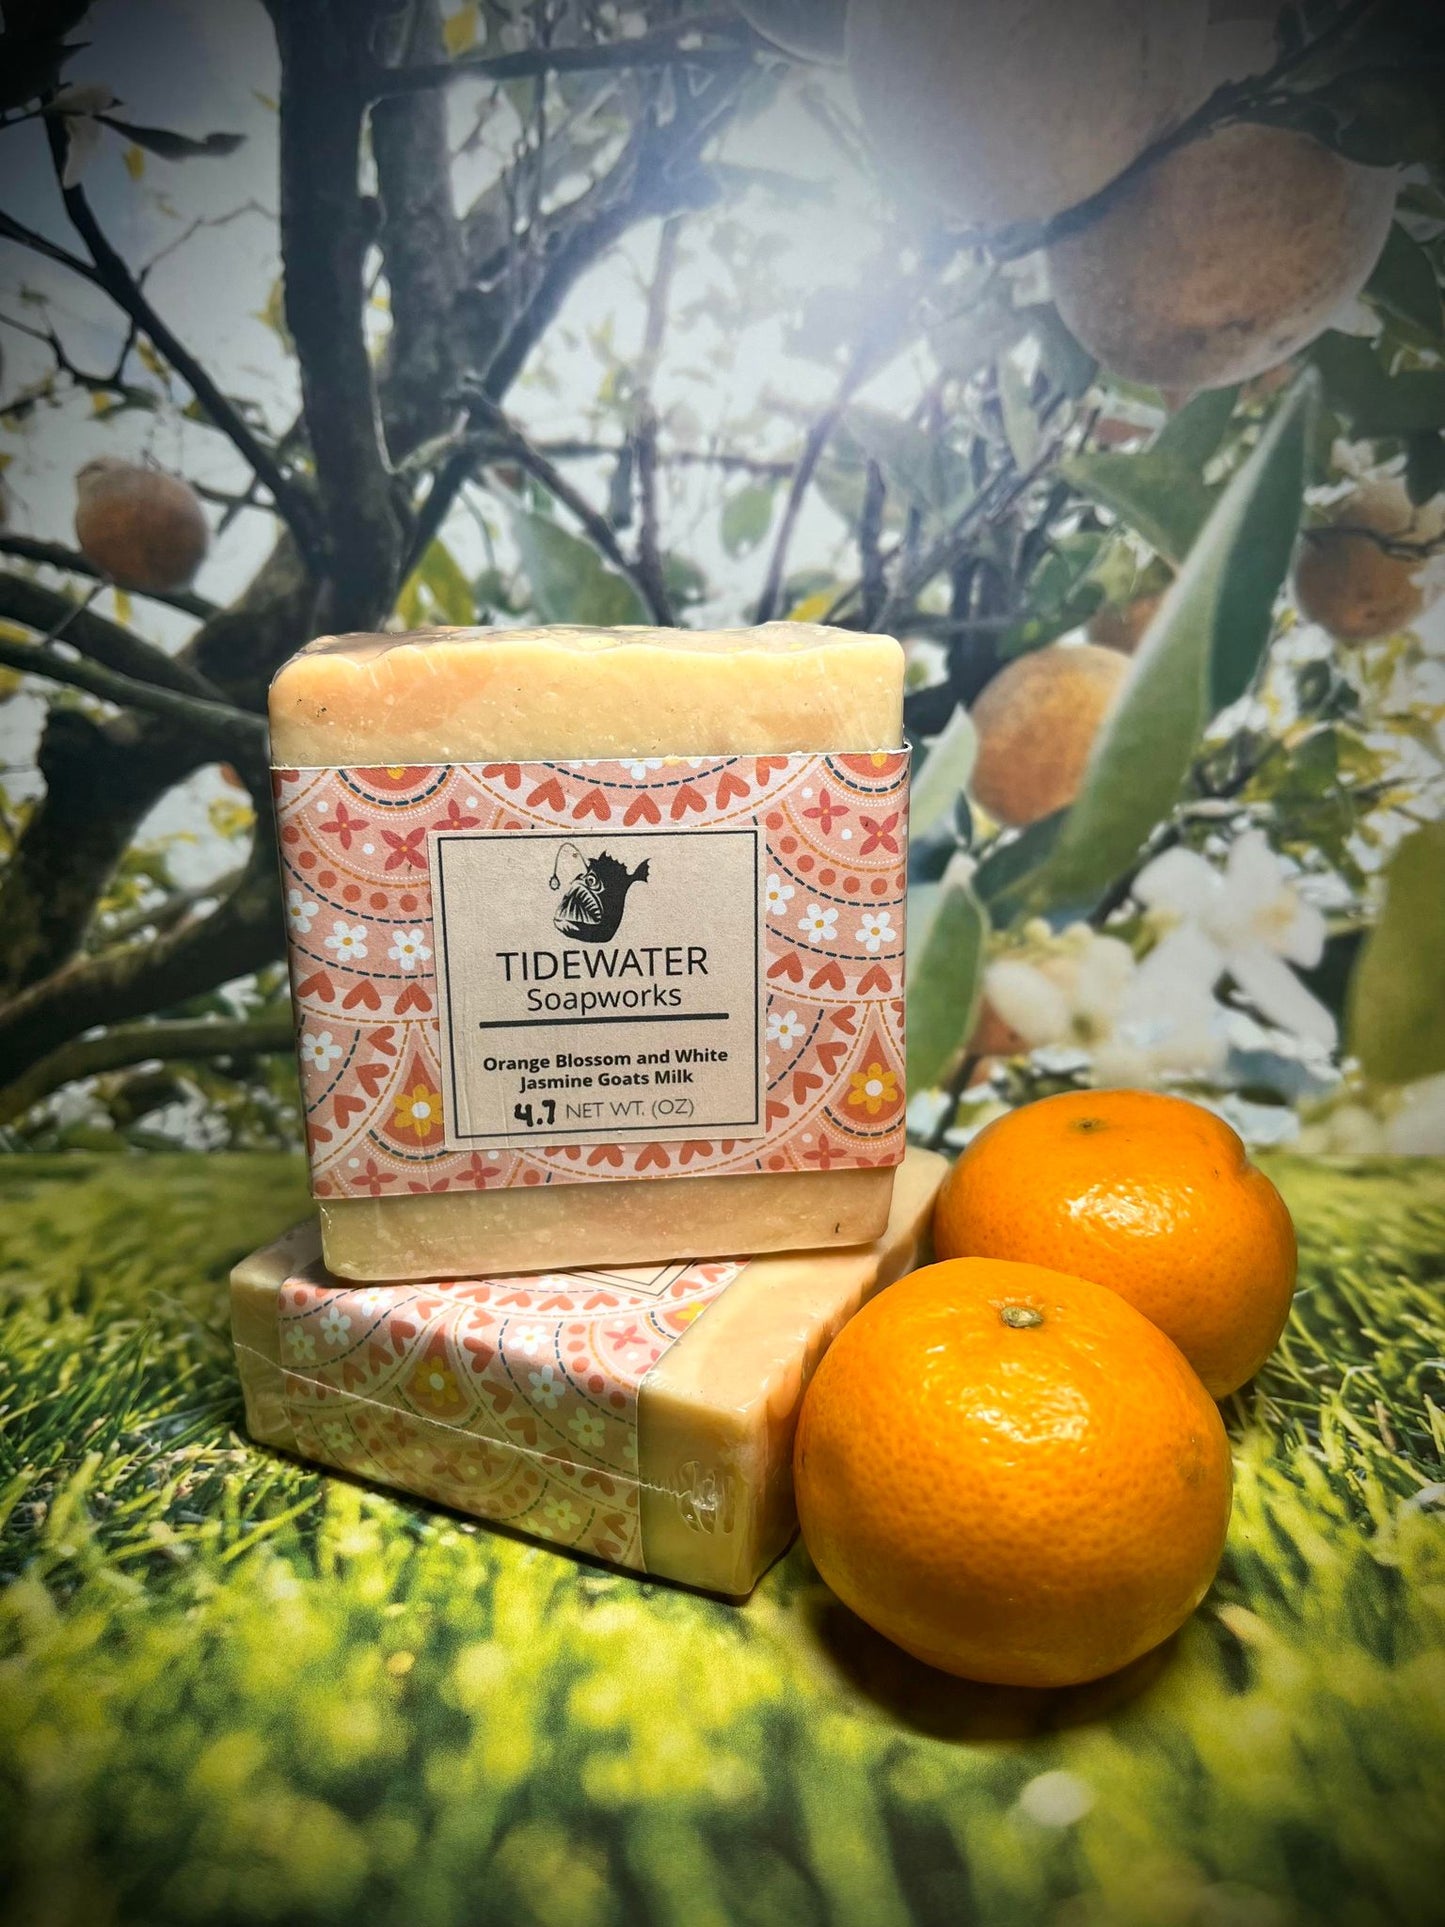 Orange Blossom and White Jasmine Goats Milk Soap